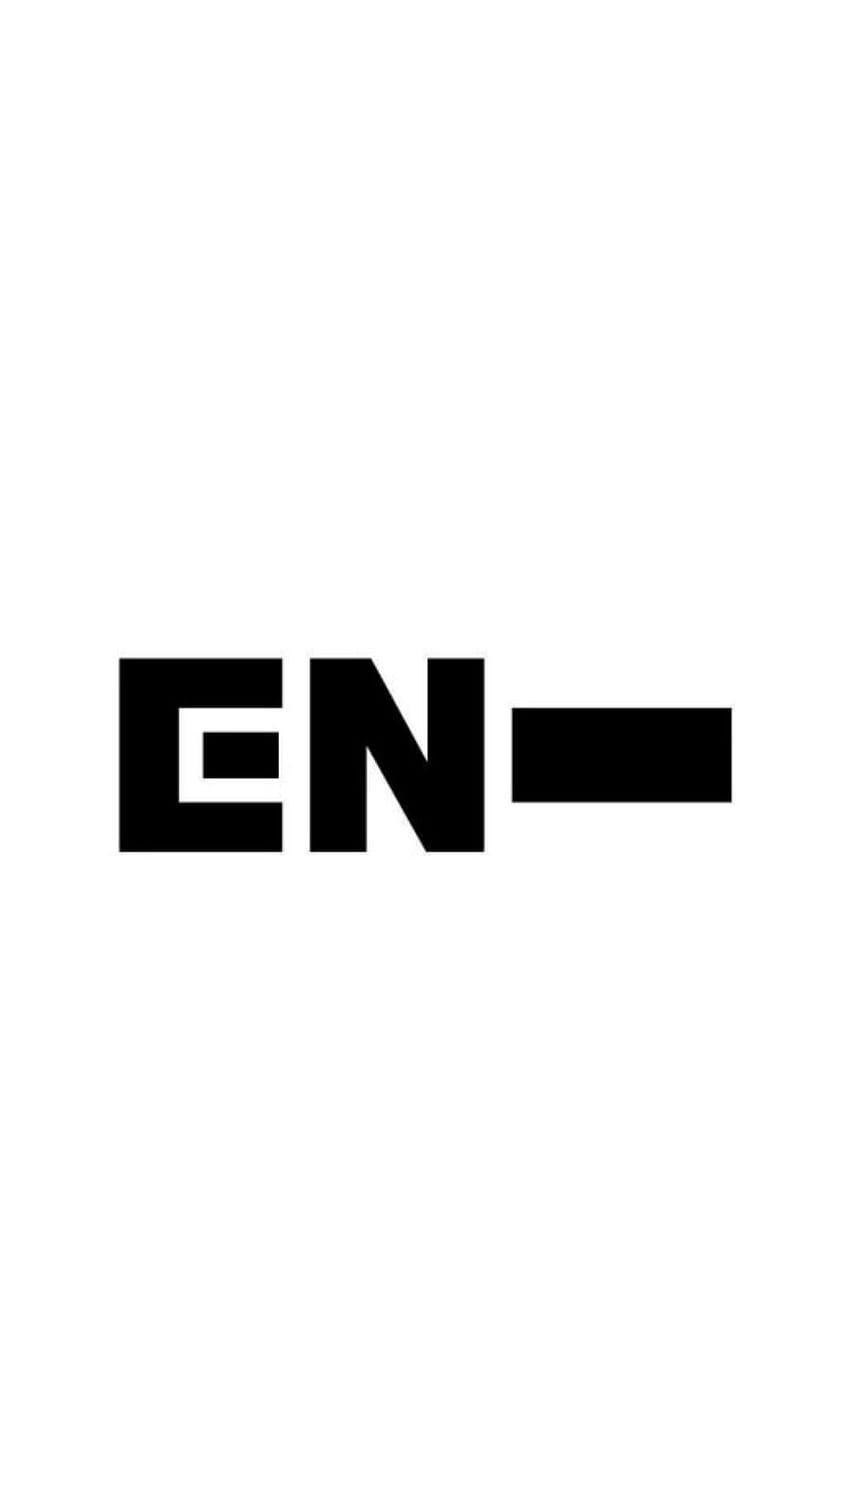 ENHYPEN logo . Logos, Different words, Tech company logos HD phone ...